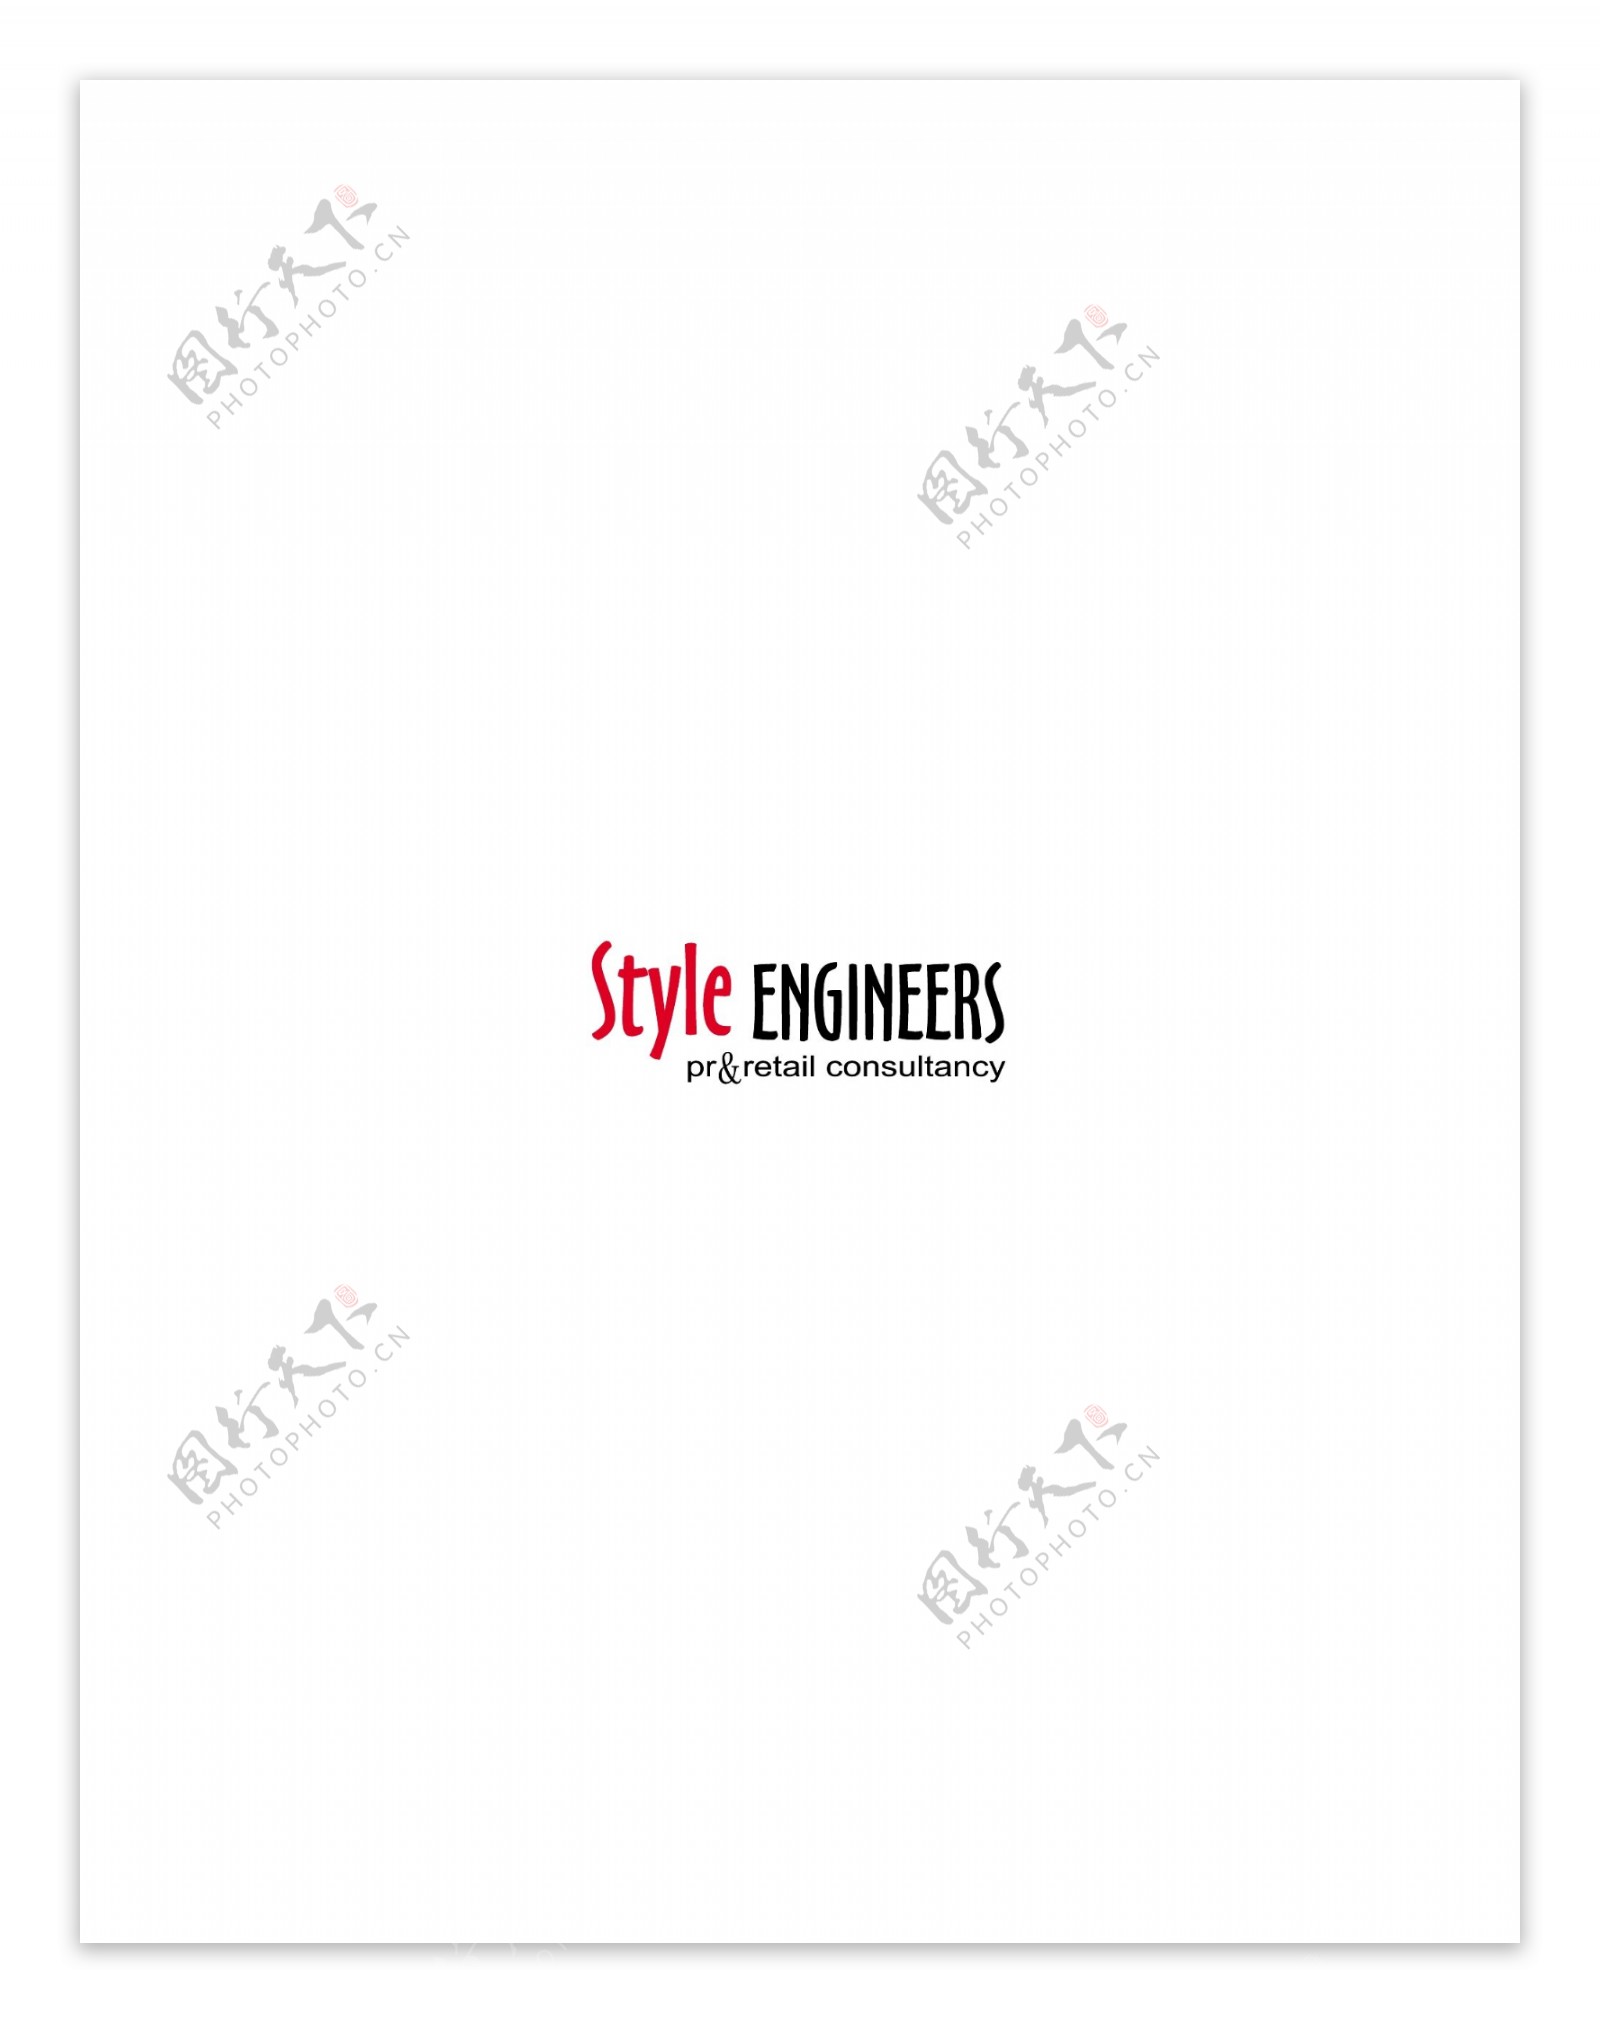 Styleengineerslogo设计欣赏Styleengineers下载标志设计欣赏